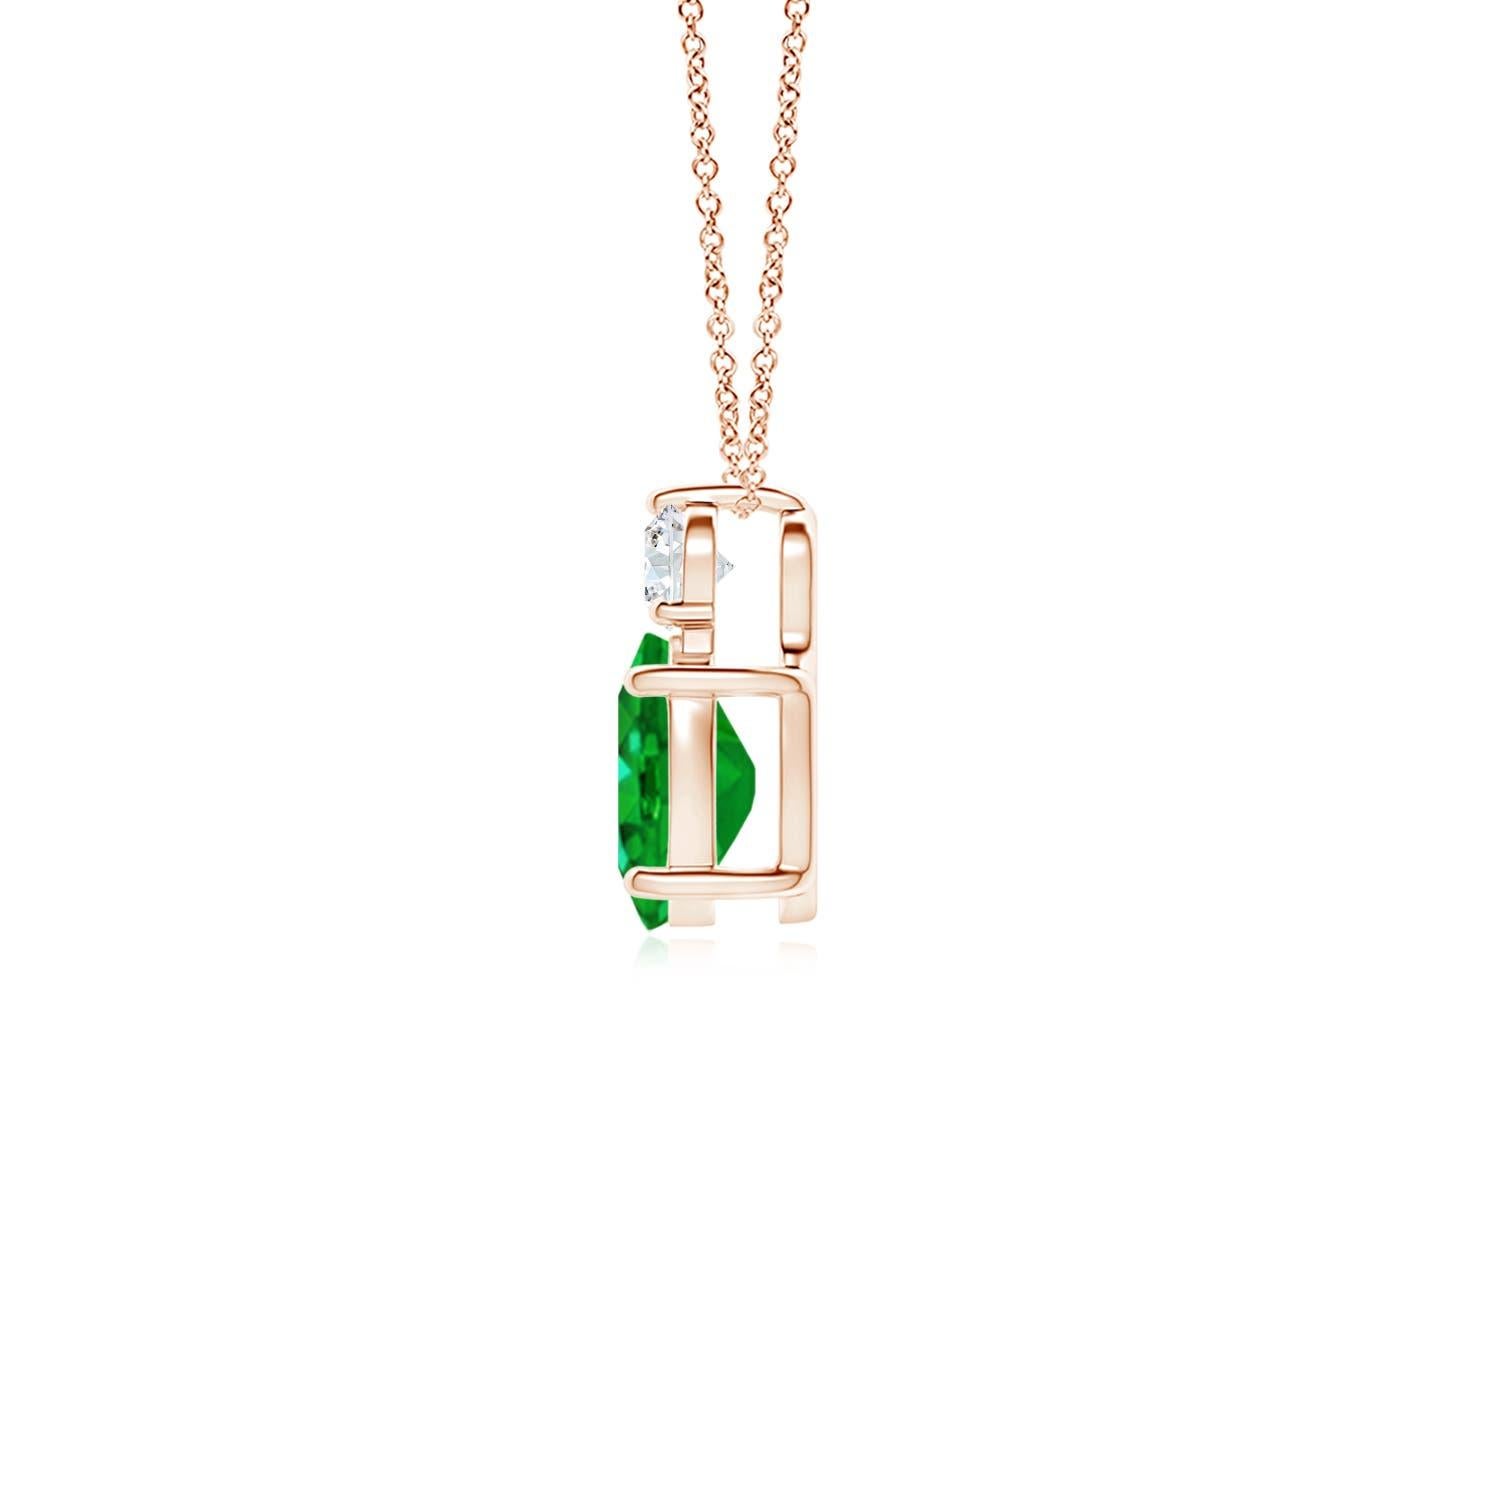 Dieser klassische Solitär-Smaragdanhänger aus 14 Karat Roségold verkörpert Eleganz. Der sattgrüne ovale Smaragd wird von einem funkelnden Diamanten gekrönt, der für zusätzlichen Reiz sorgt. Die verschlungenen Schnörkel an den Seiten unterstreichen